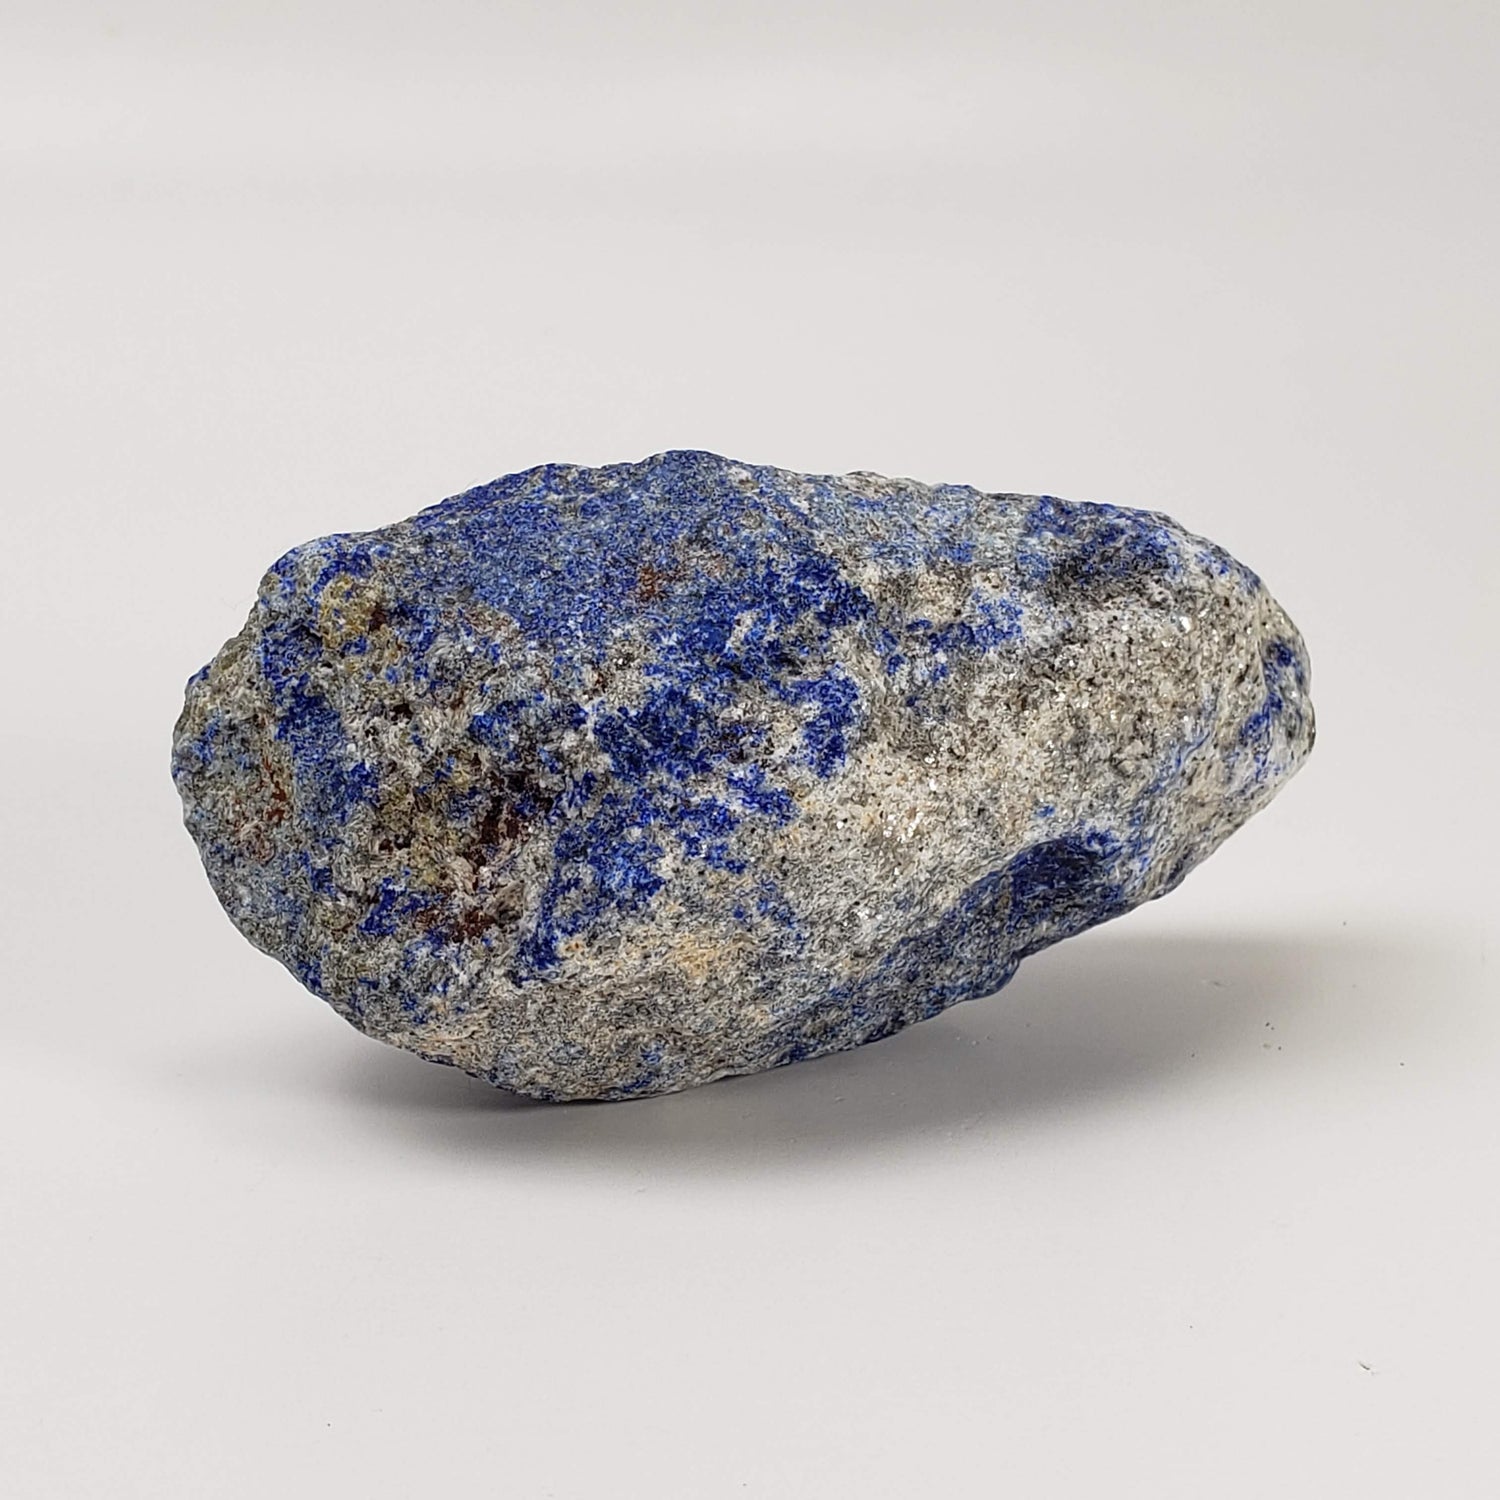 Lapis-lazuli brut | Bleu profond | 111,6 grammes | Afghanistan